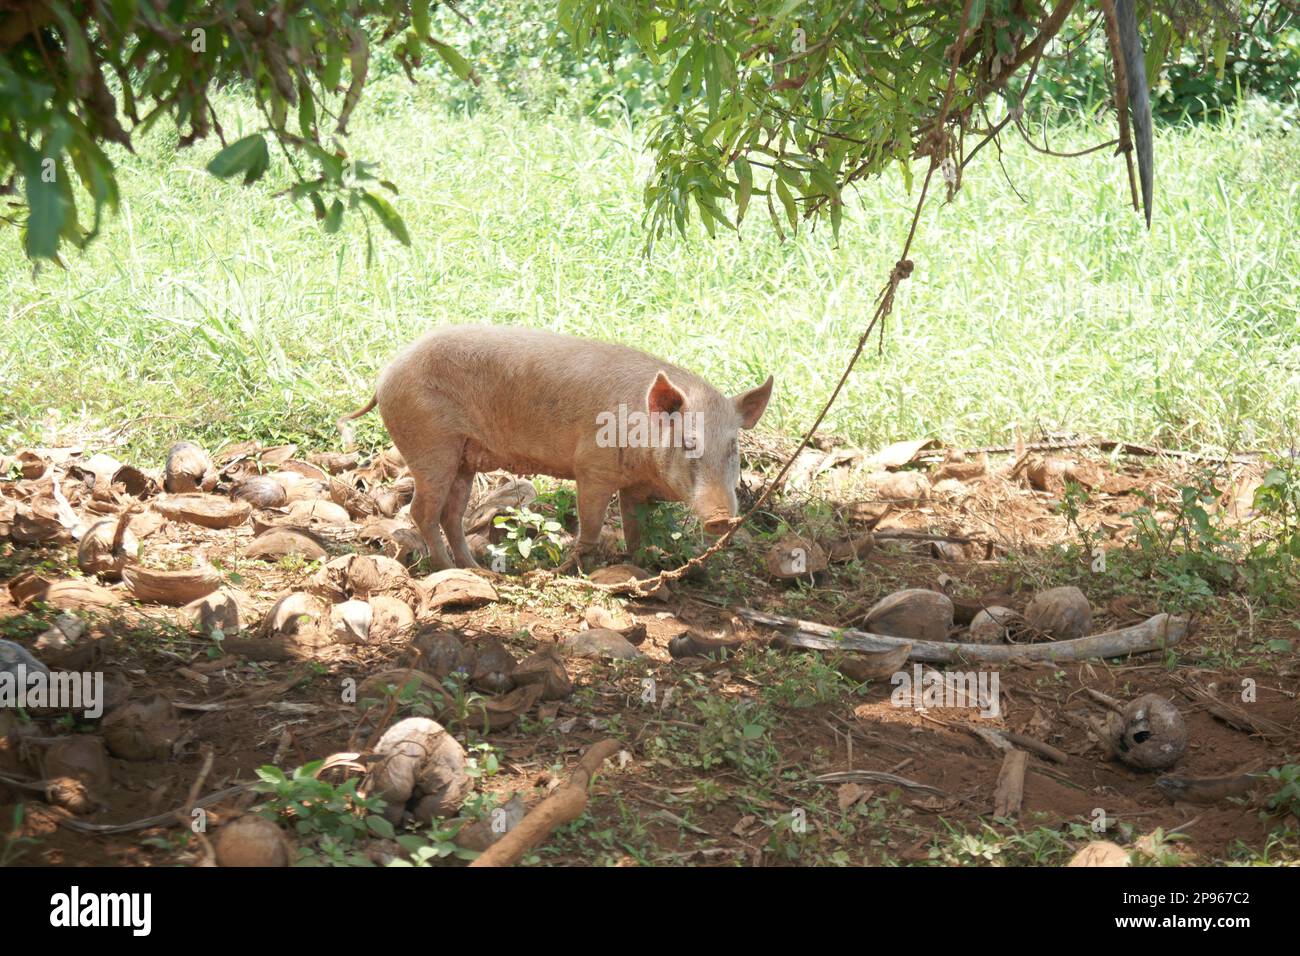 Cerdo en tierra áspera a la sombra del árbol. Foto de stock